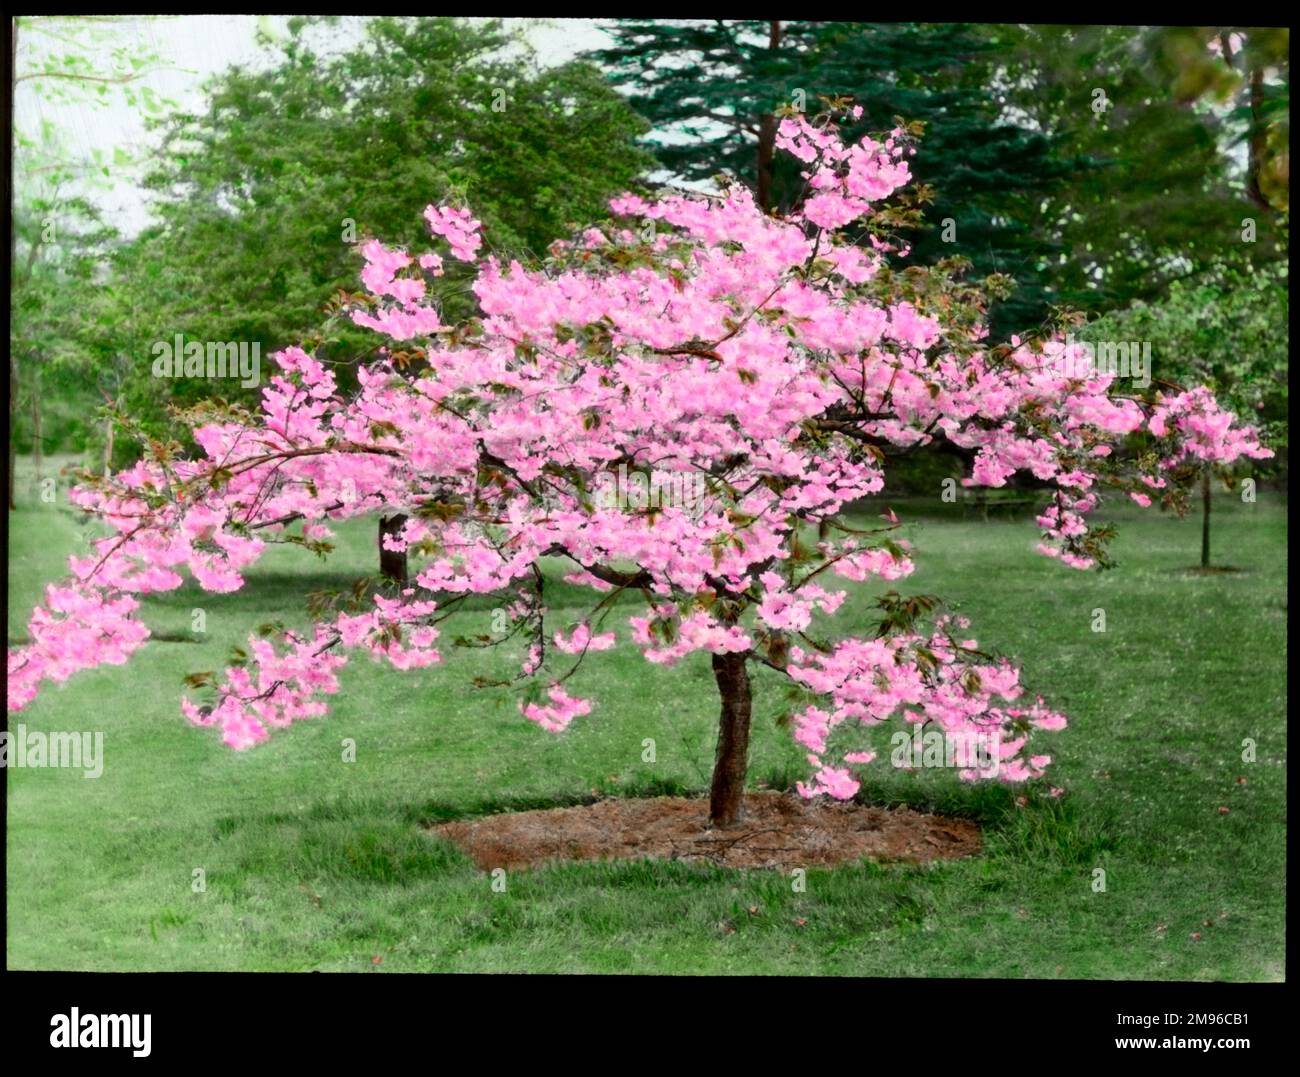 Prunus (cerezo floreciente), cargado de flores de color rosa brillante. Foto de stock